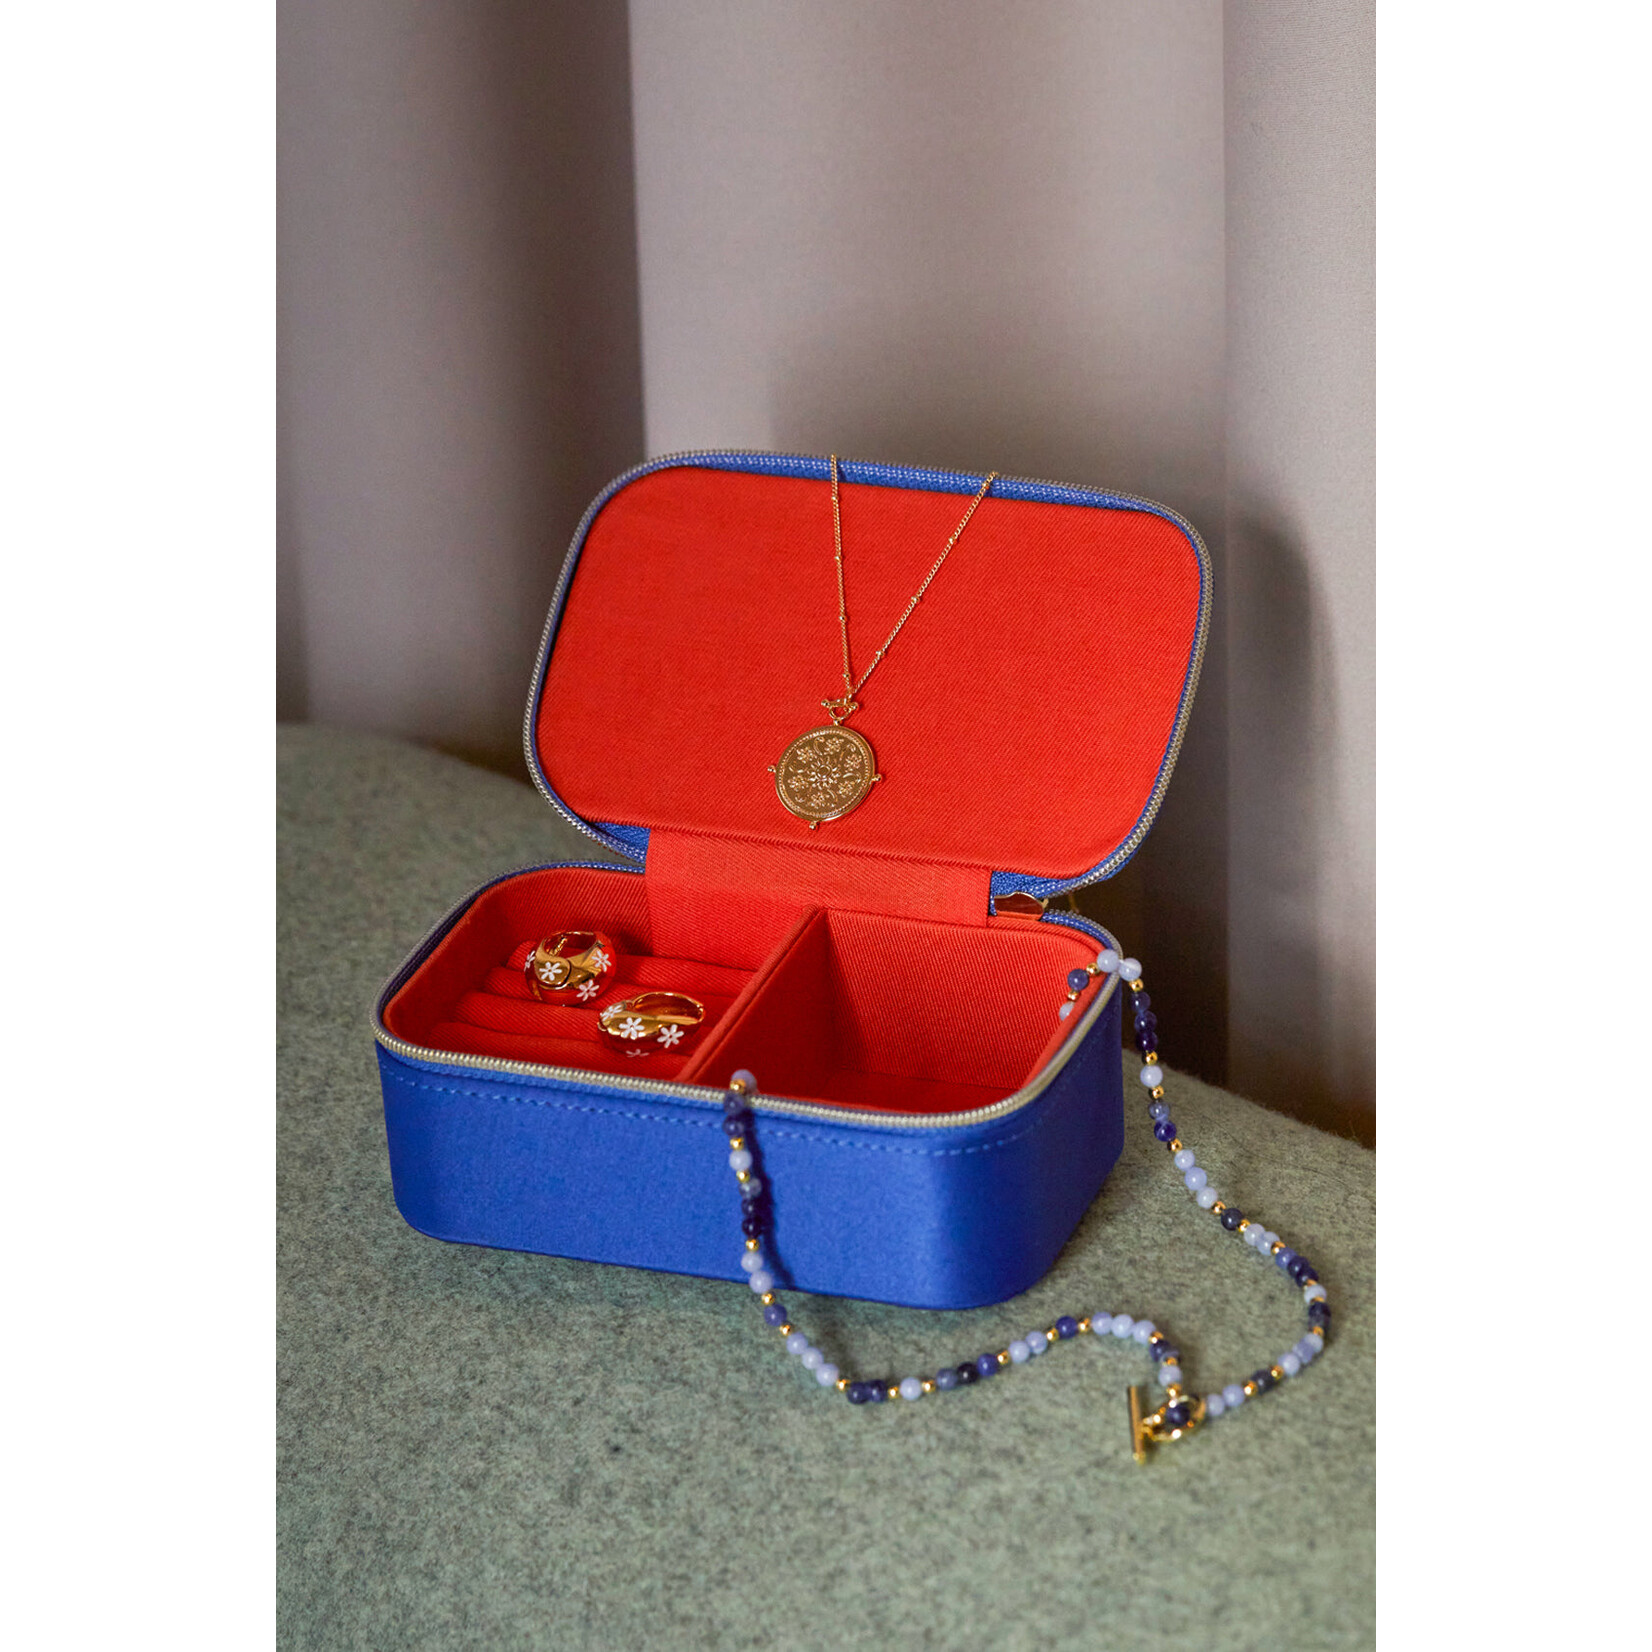 Estella Bartlett Ltd. Estella Bartlett Mini Jewelry Box - Contrast Satin Blue